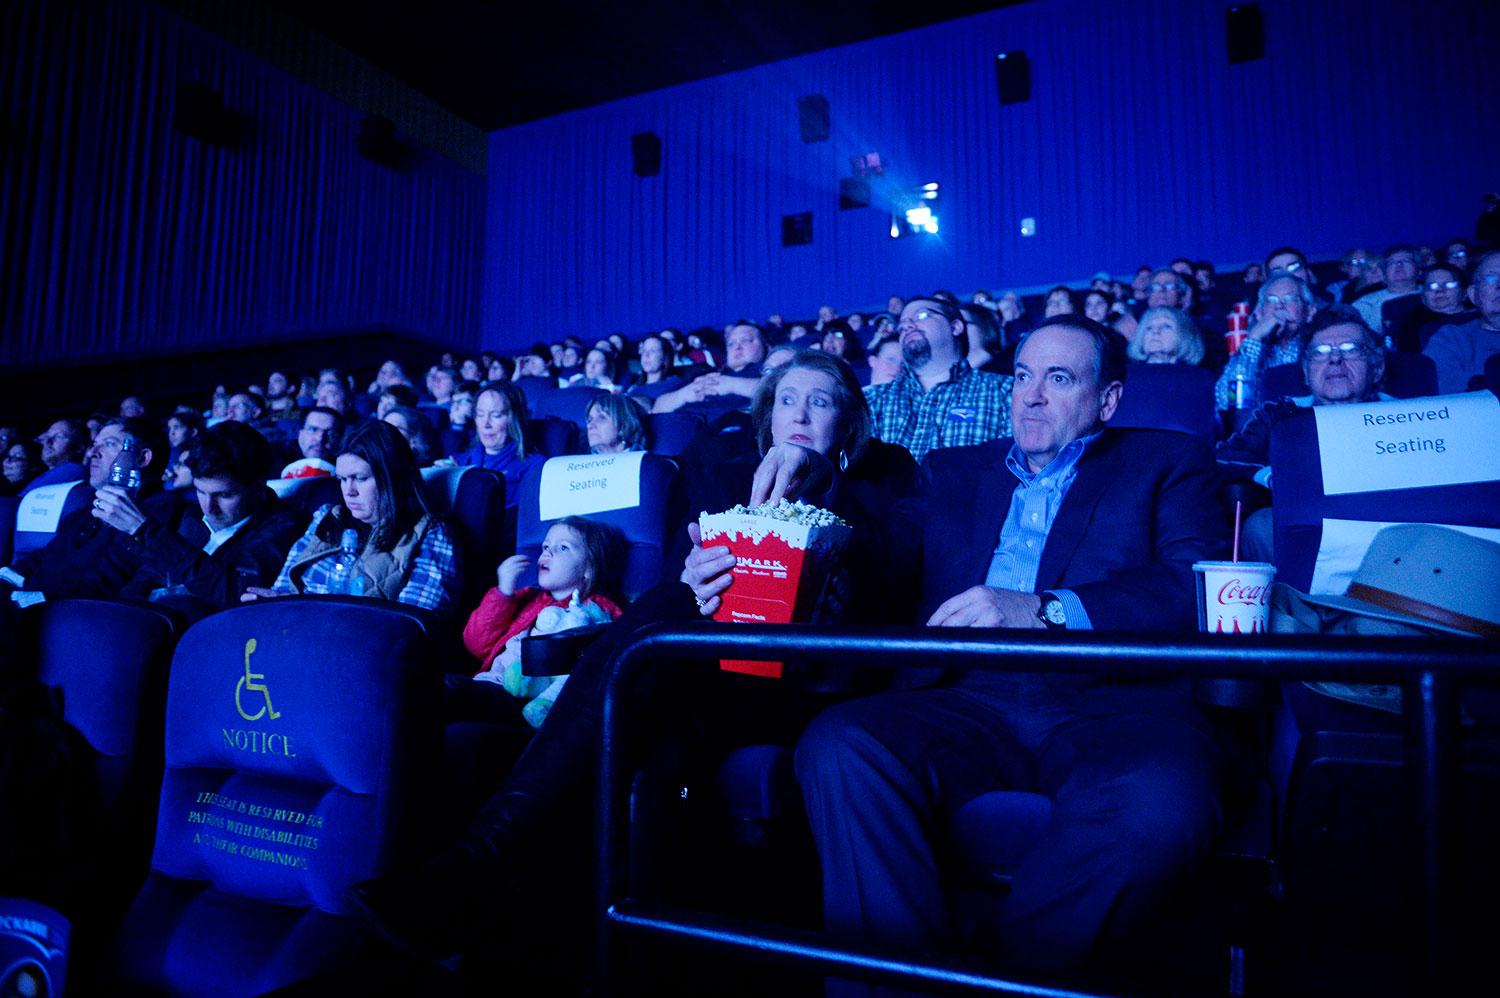 Mike Huckabee tillbringar sista kvällen före valet genom att se filmen ”God’s not dead 2” på bio.